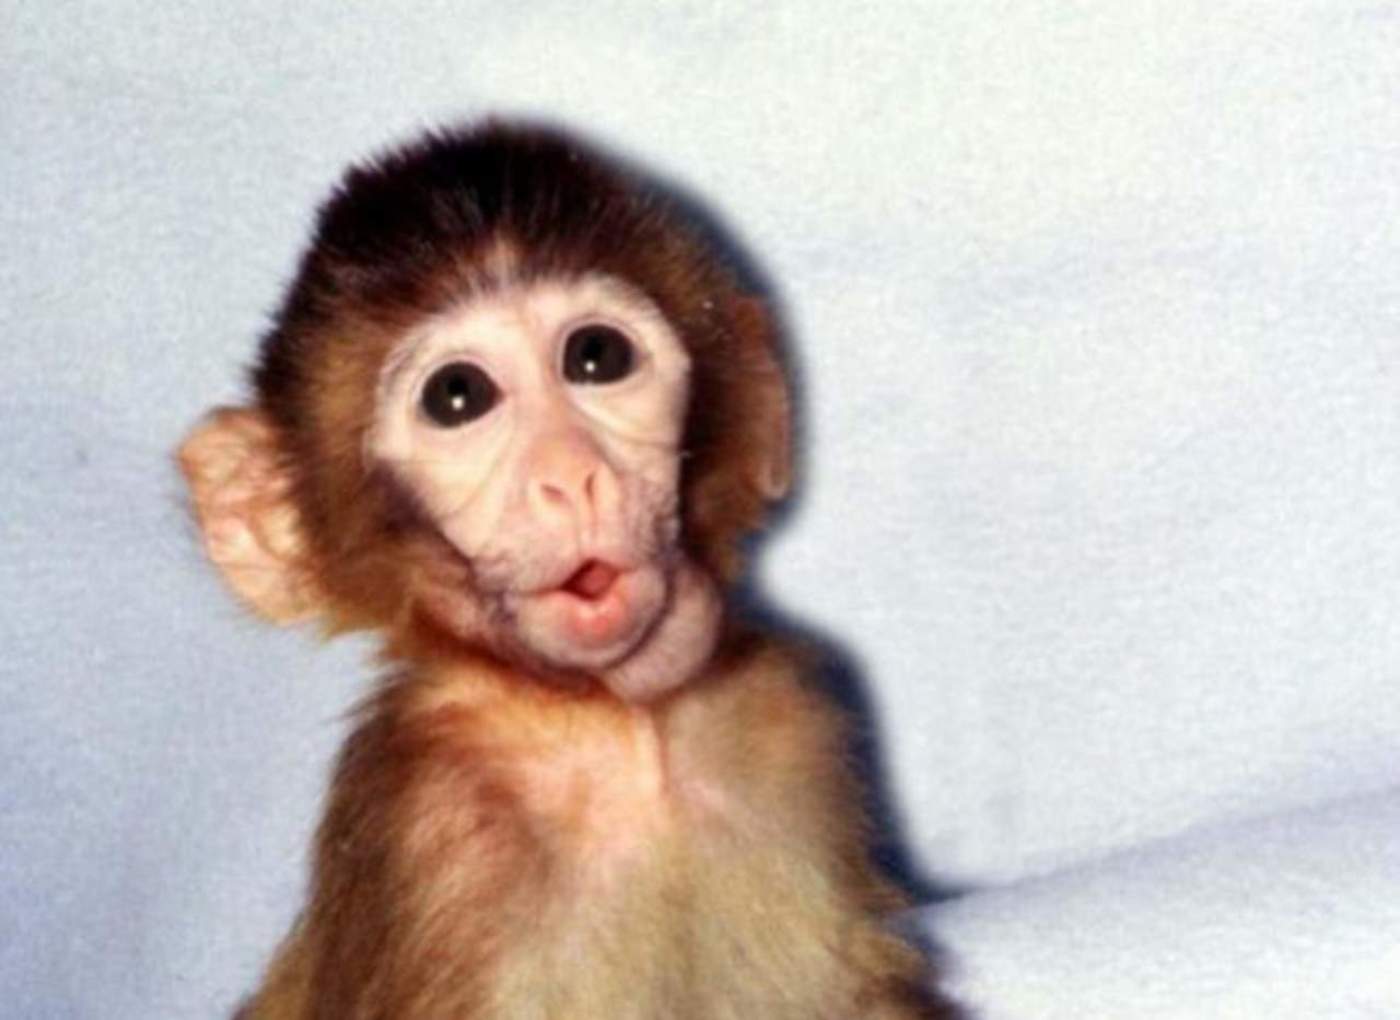 2001: Presentan a ANDi, el primer primate genéticamente modificado